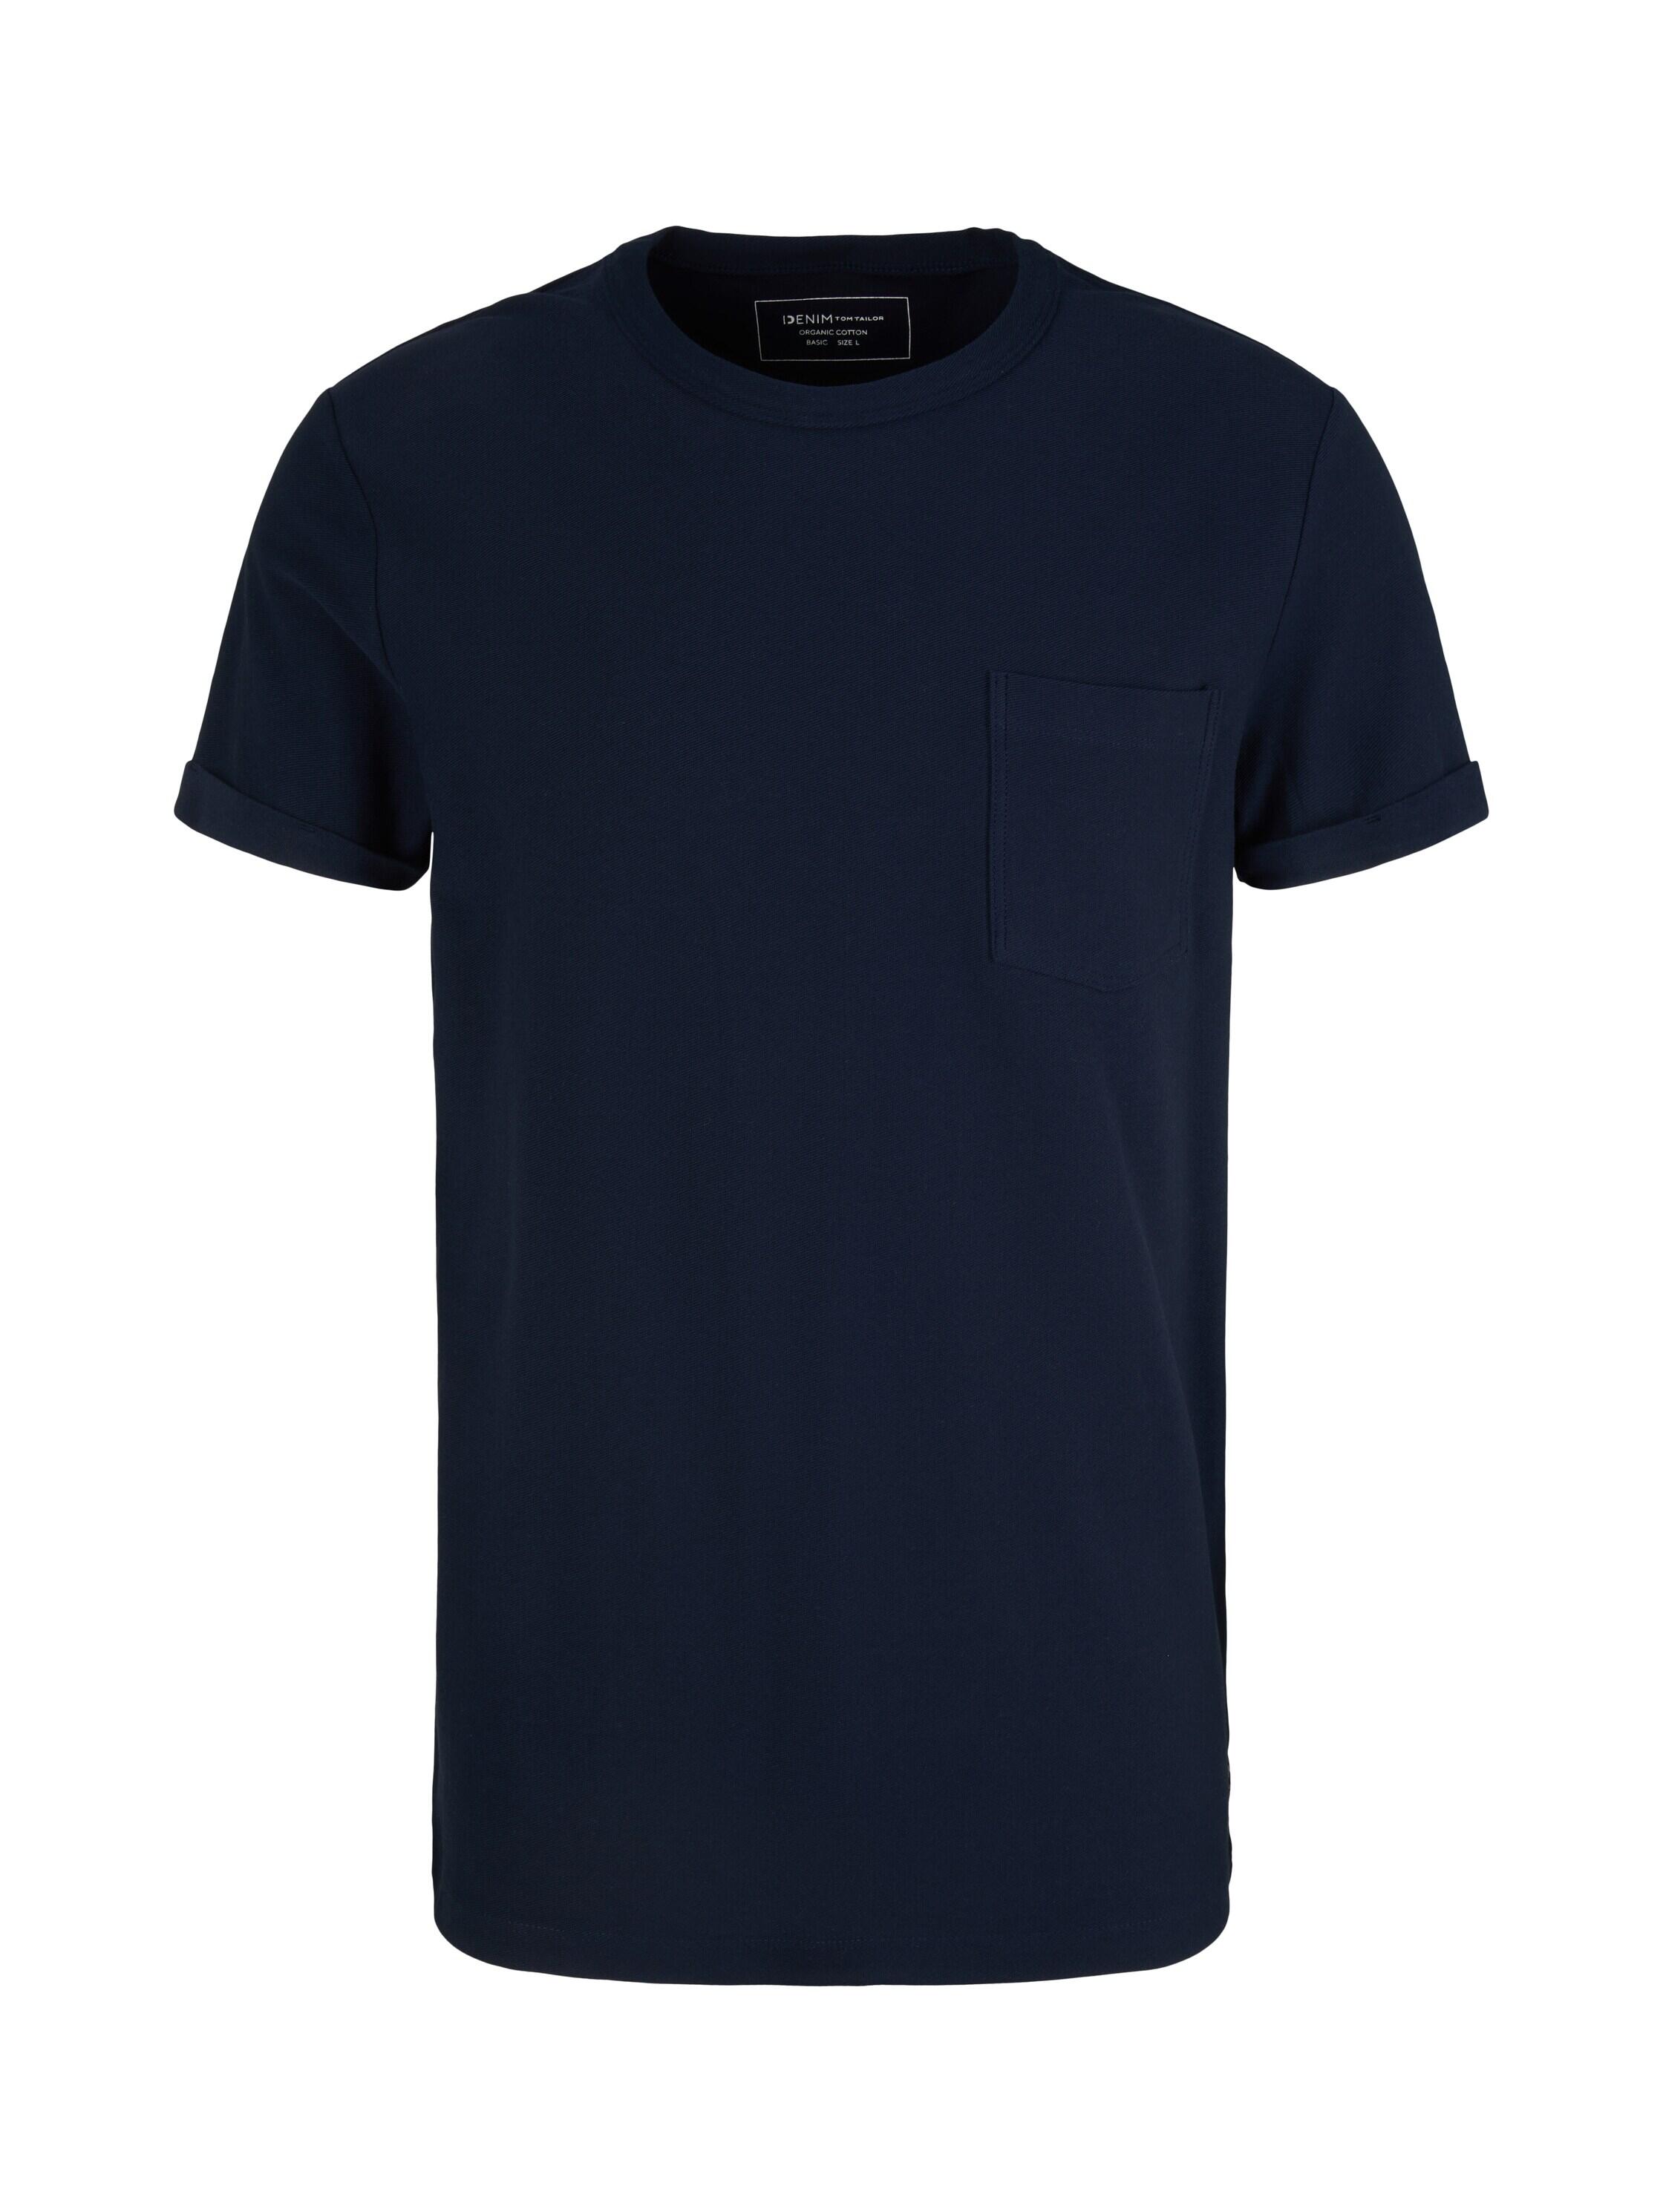 Tailor Tom | Deutschland T-Shirt mit Denim Brusttasche